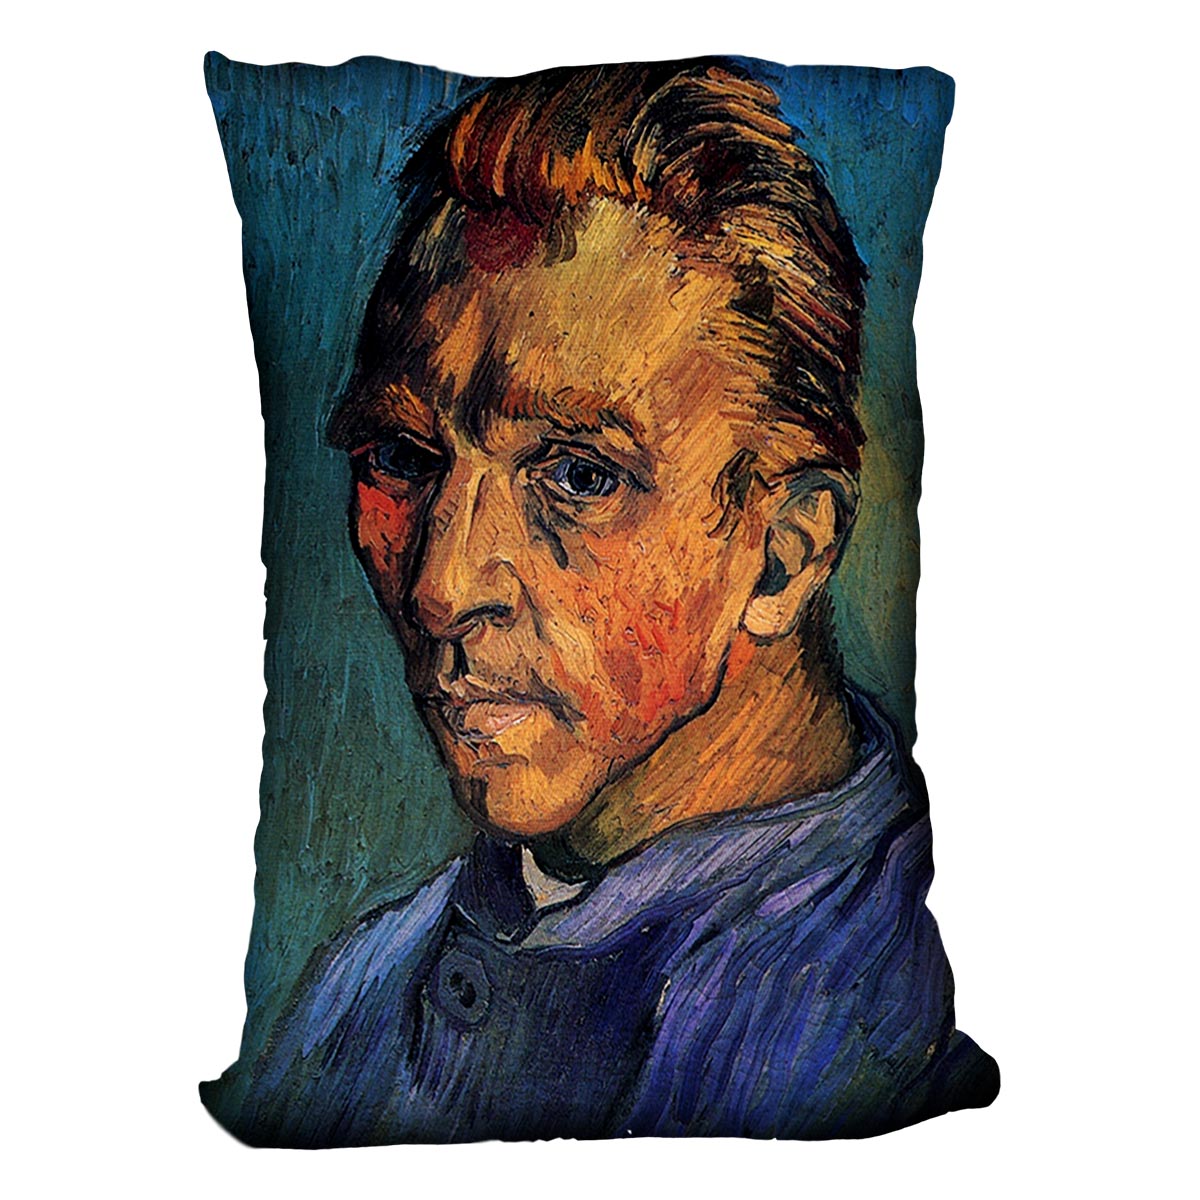 Self-Portrait by Van Gogh Cushion